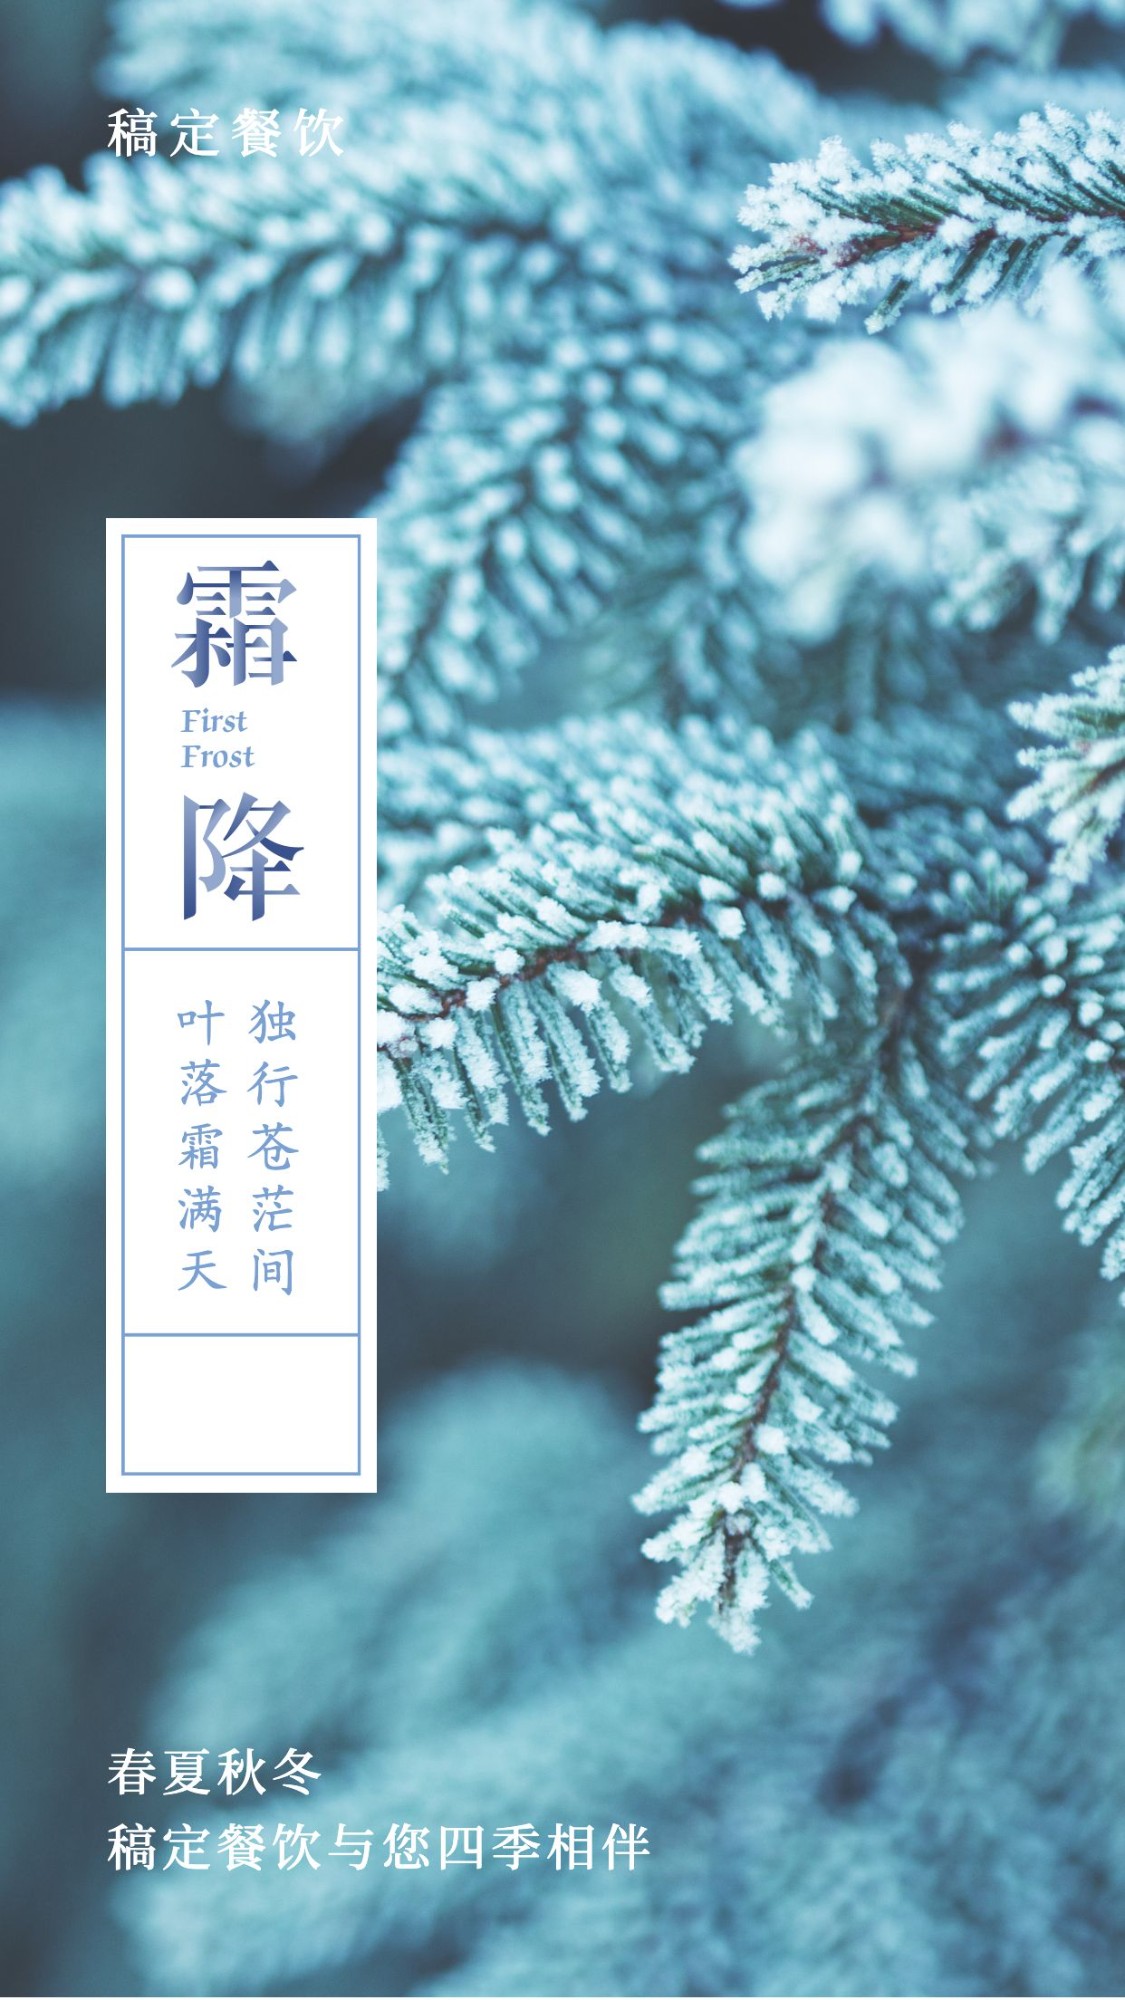 霜降二十四节气祝福问候文艺实景手机海报